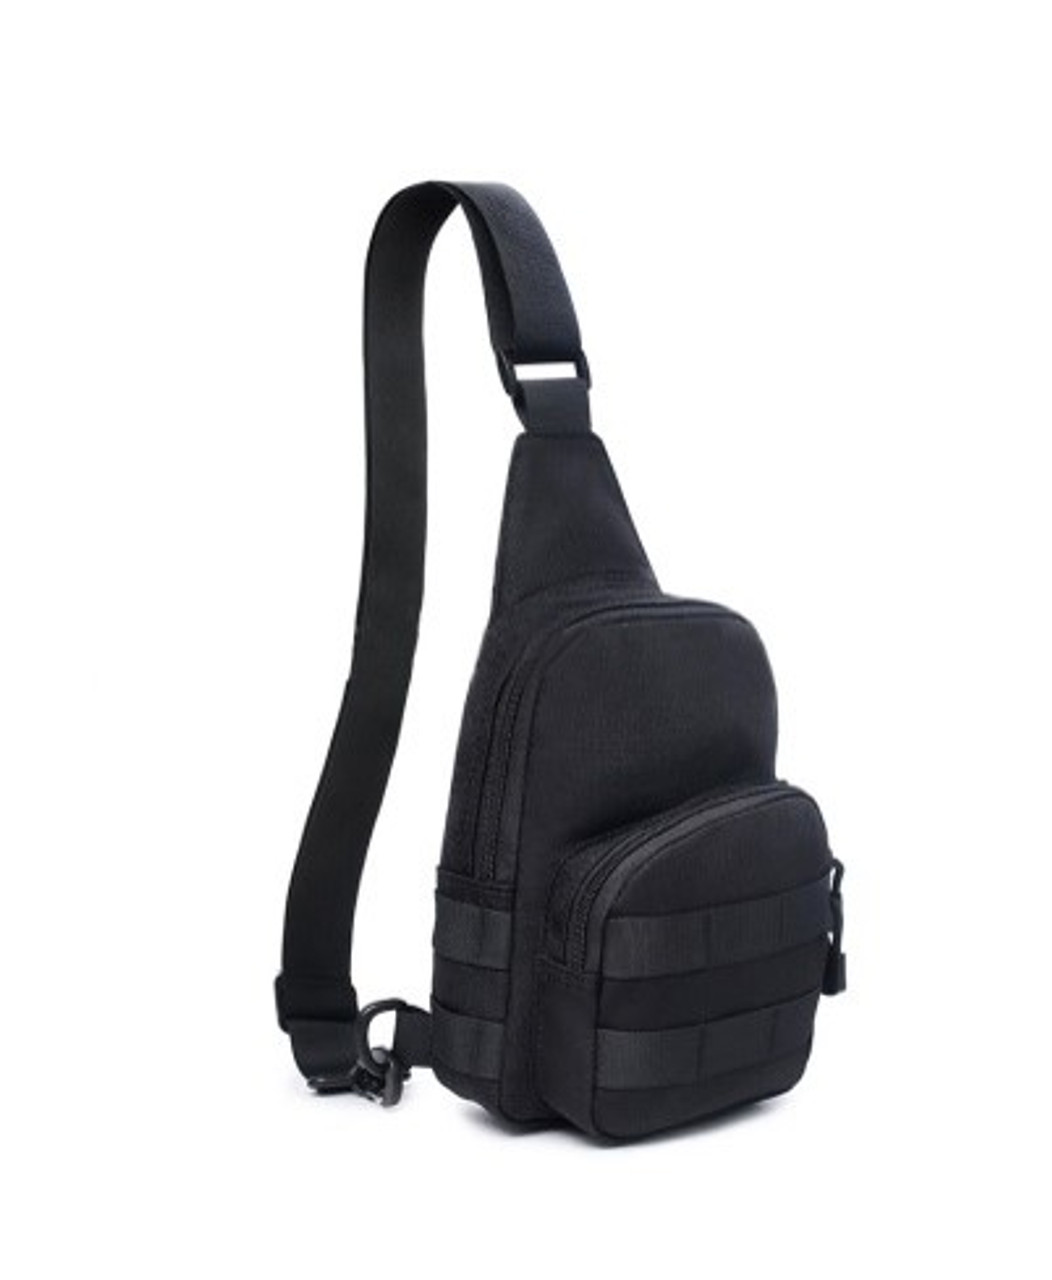 Carlebben 2S Black Tactical Shoulder Bag - Israeli First Aid